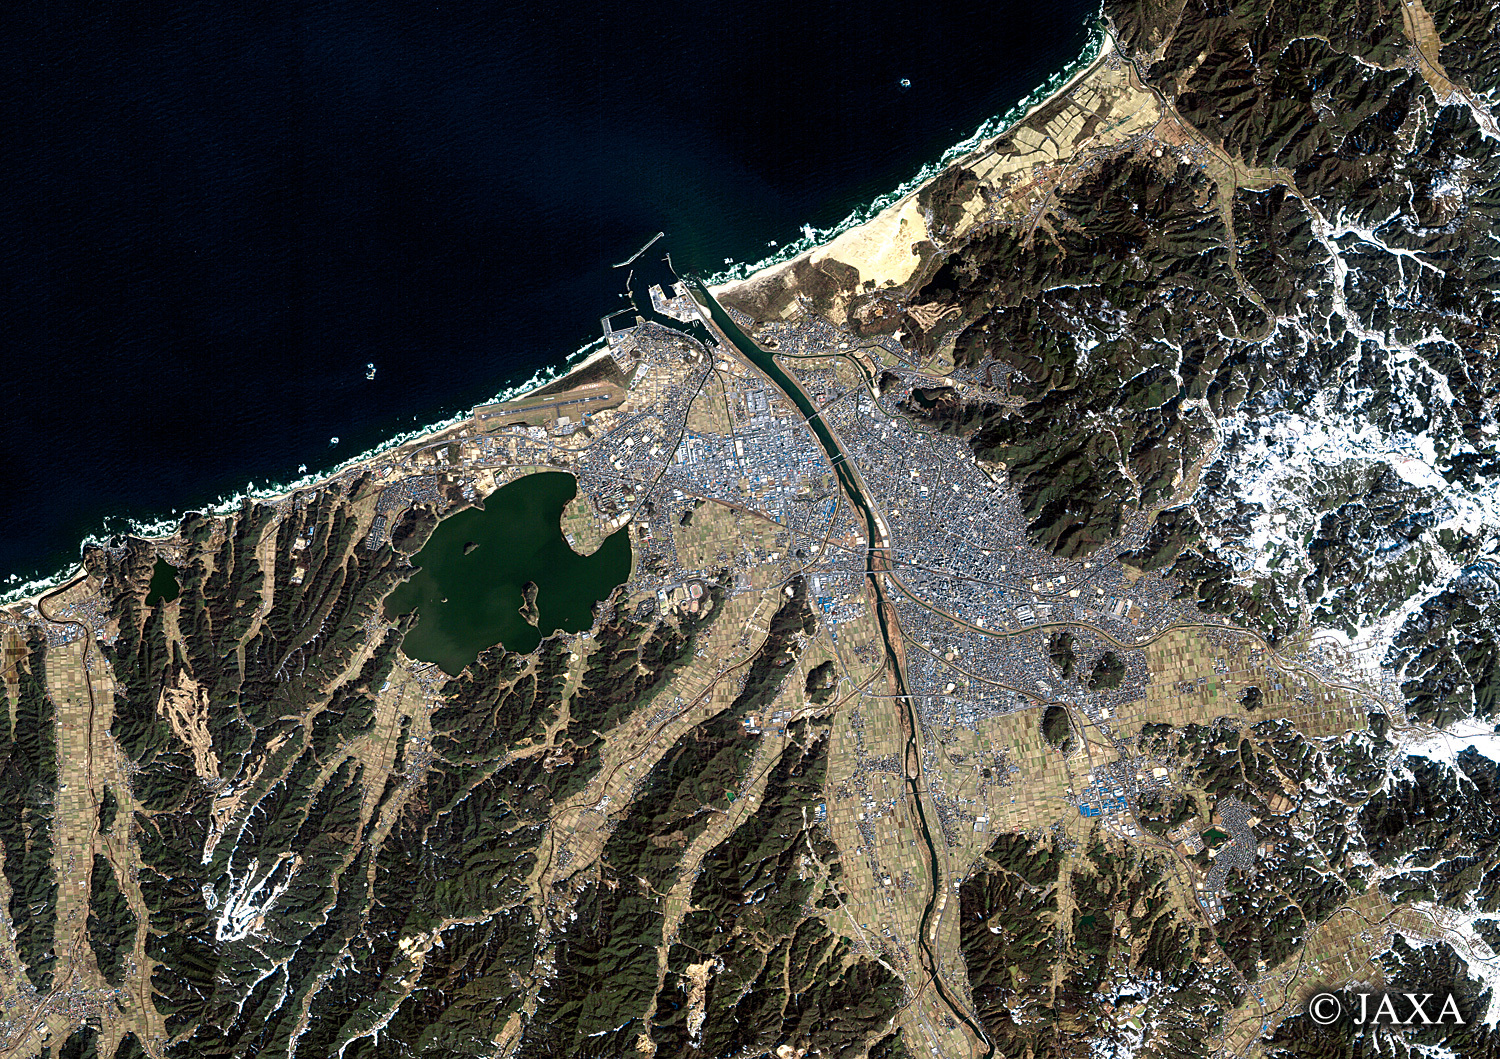 だいちから見た日本の都市 鳥取市:衛星画像